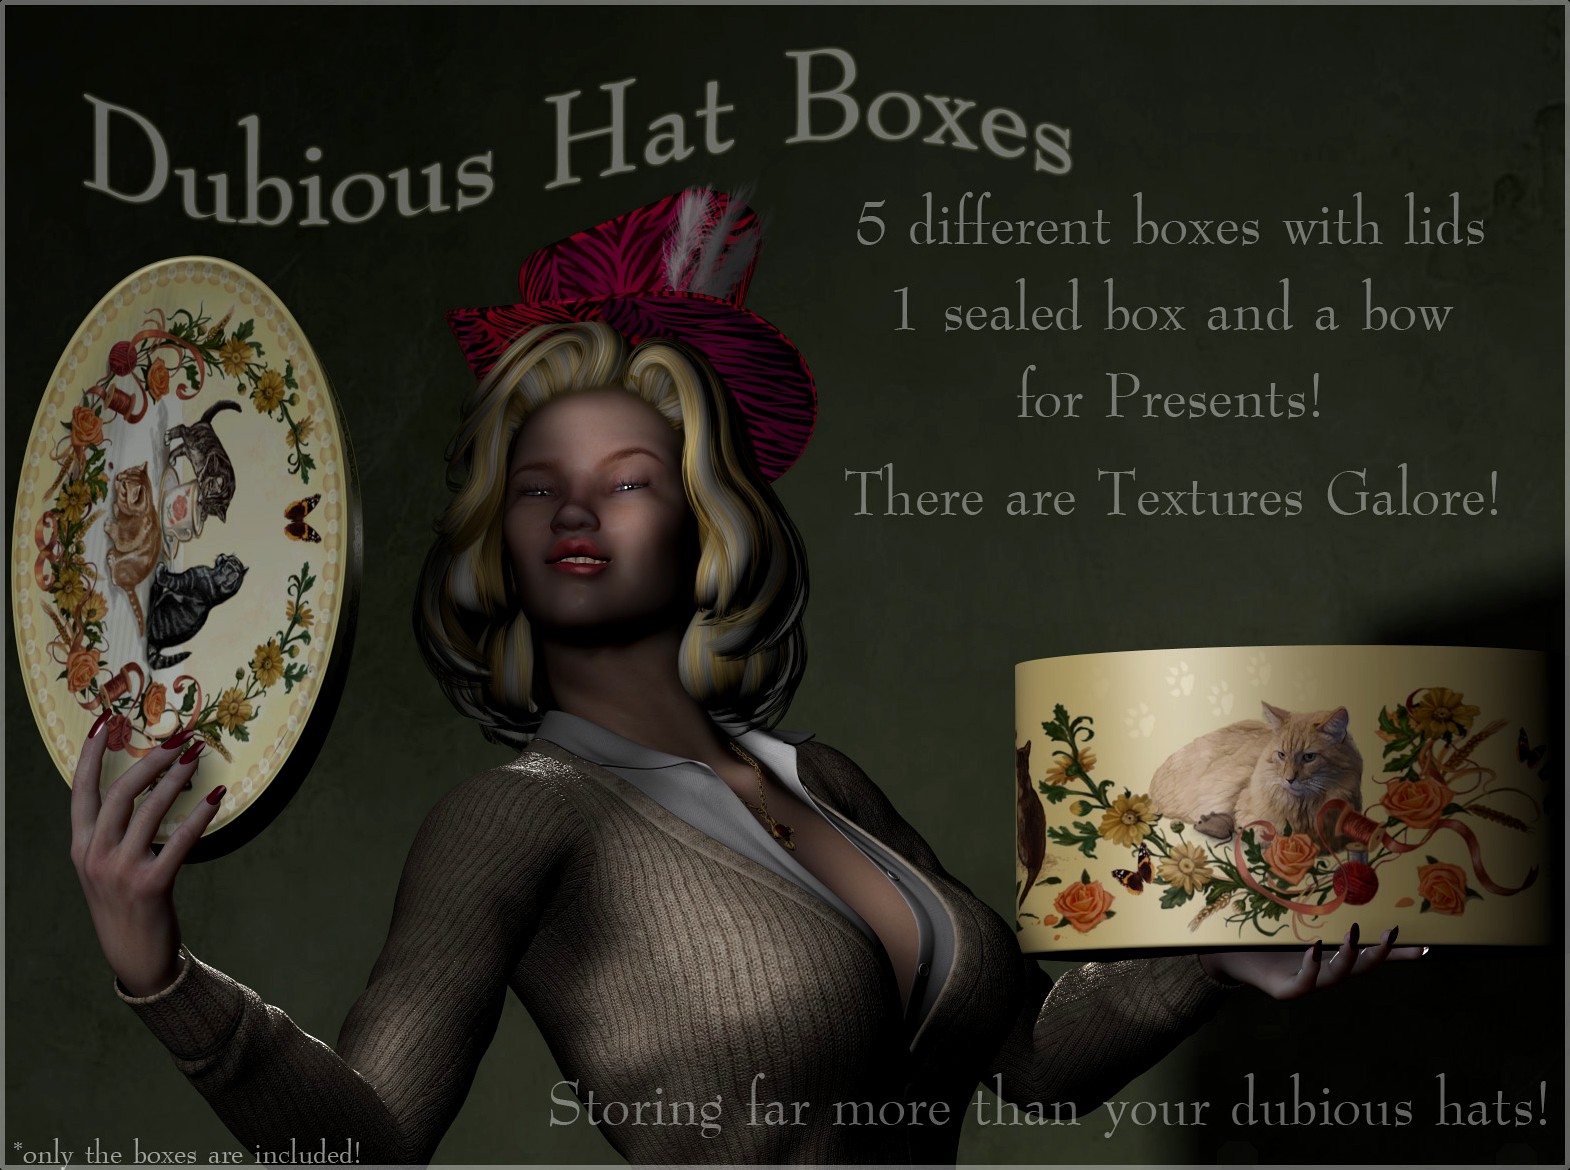 Dubious Hat Boxes